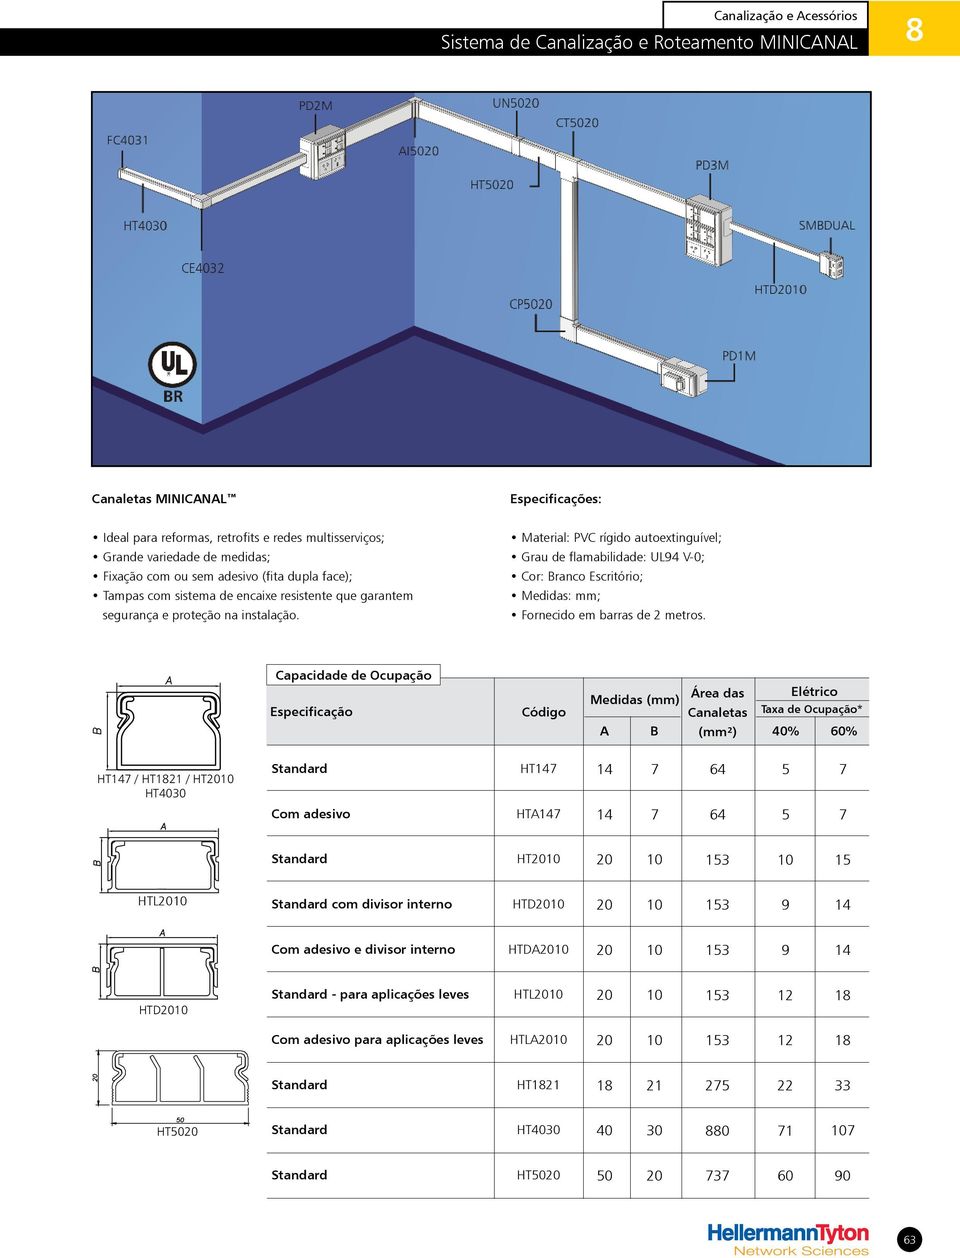 Material: PVC rígido autoextinguível; Grau de flamabilidade: UL94 V-0; Cor: Branco Escritório; Medidas: mm; Fornecido em barras de 2 metros.